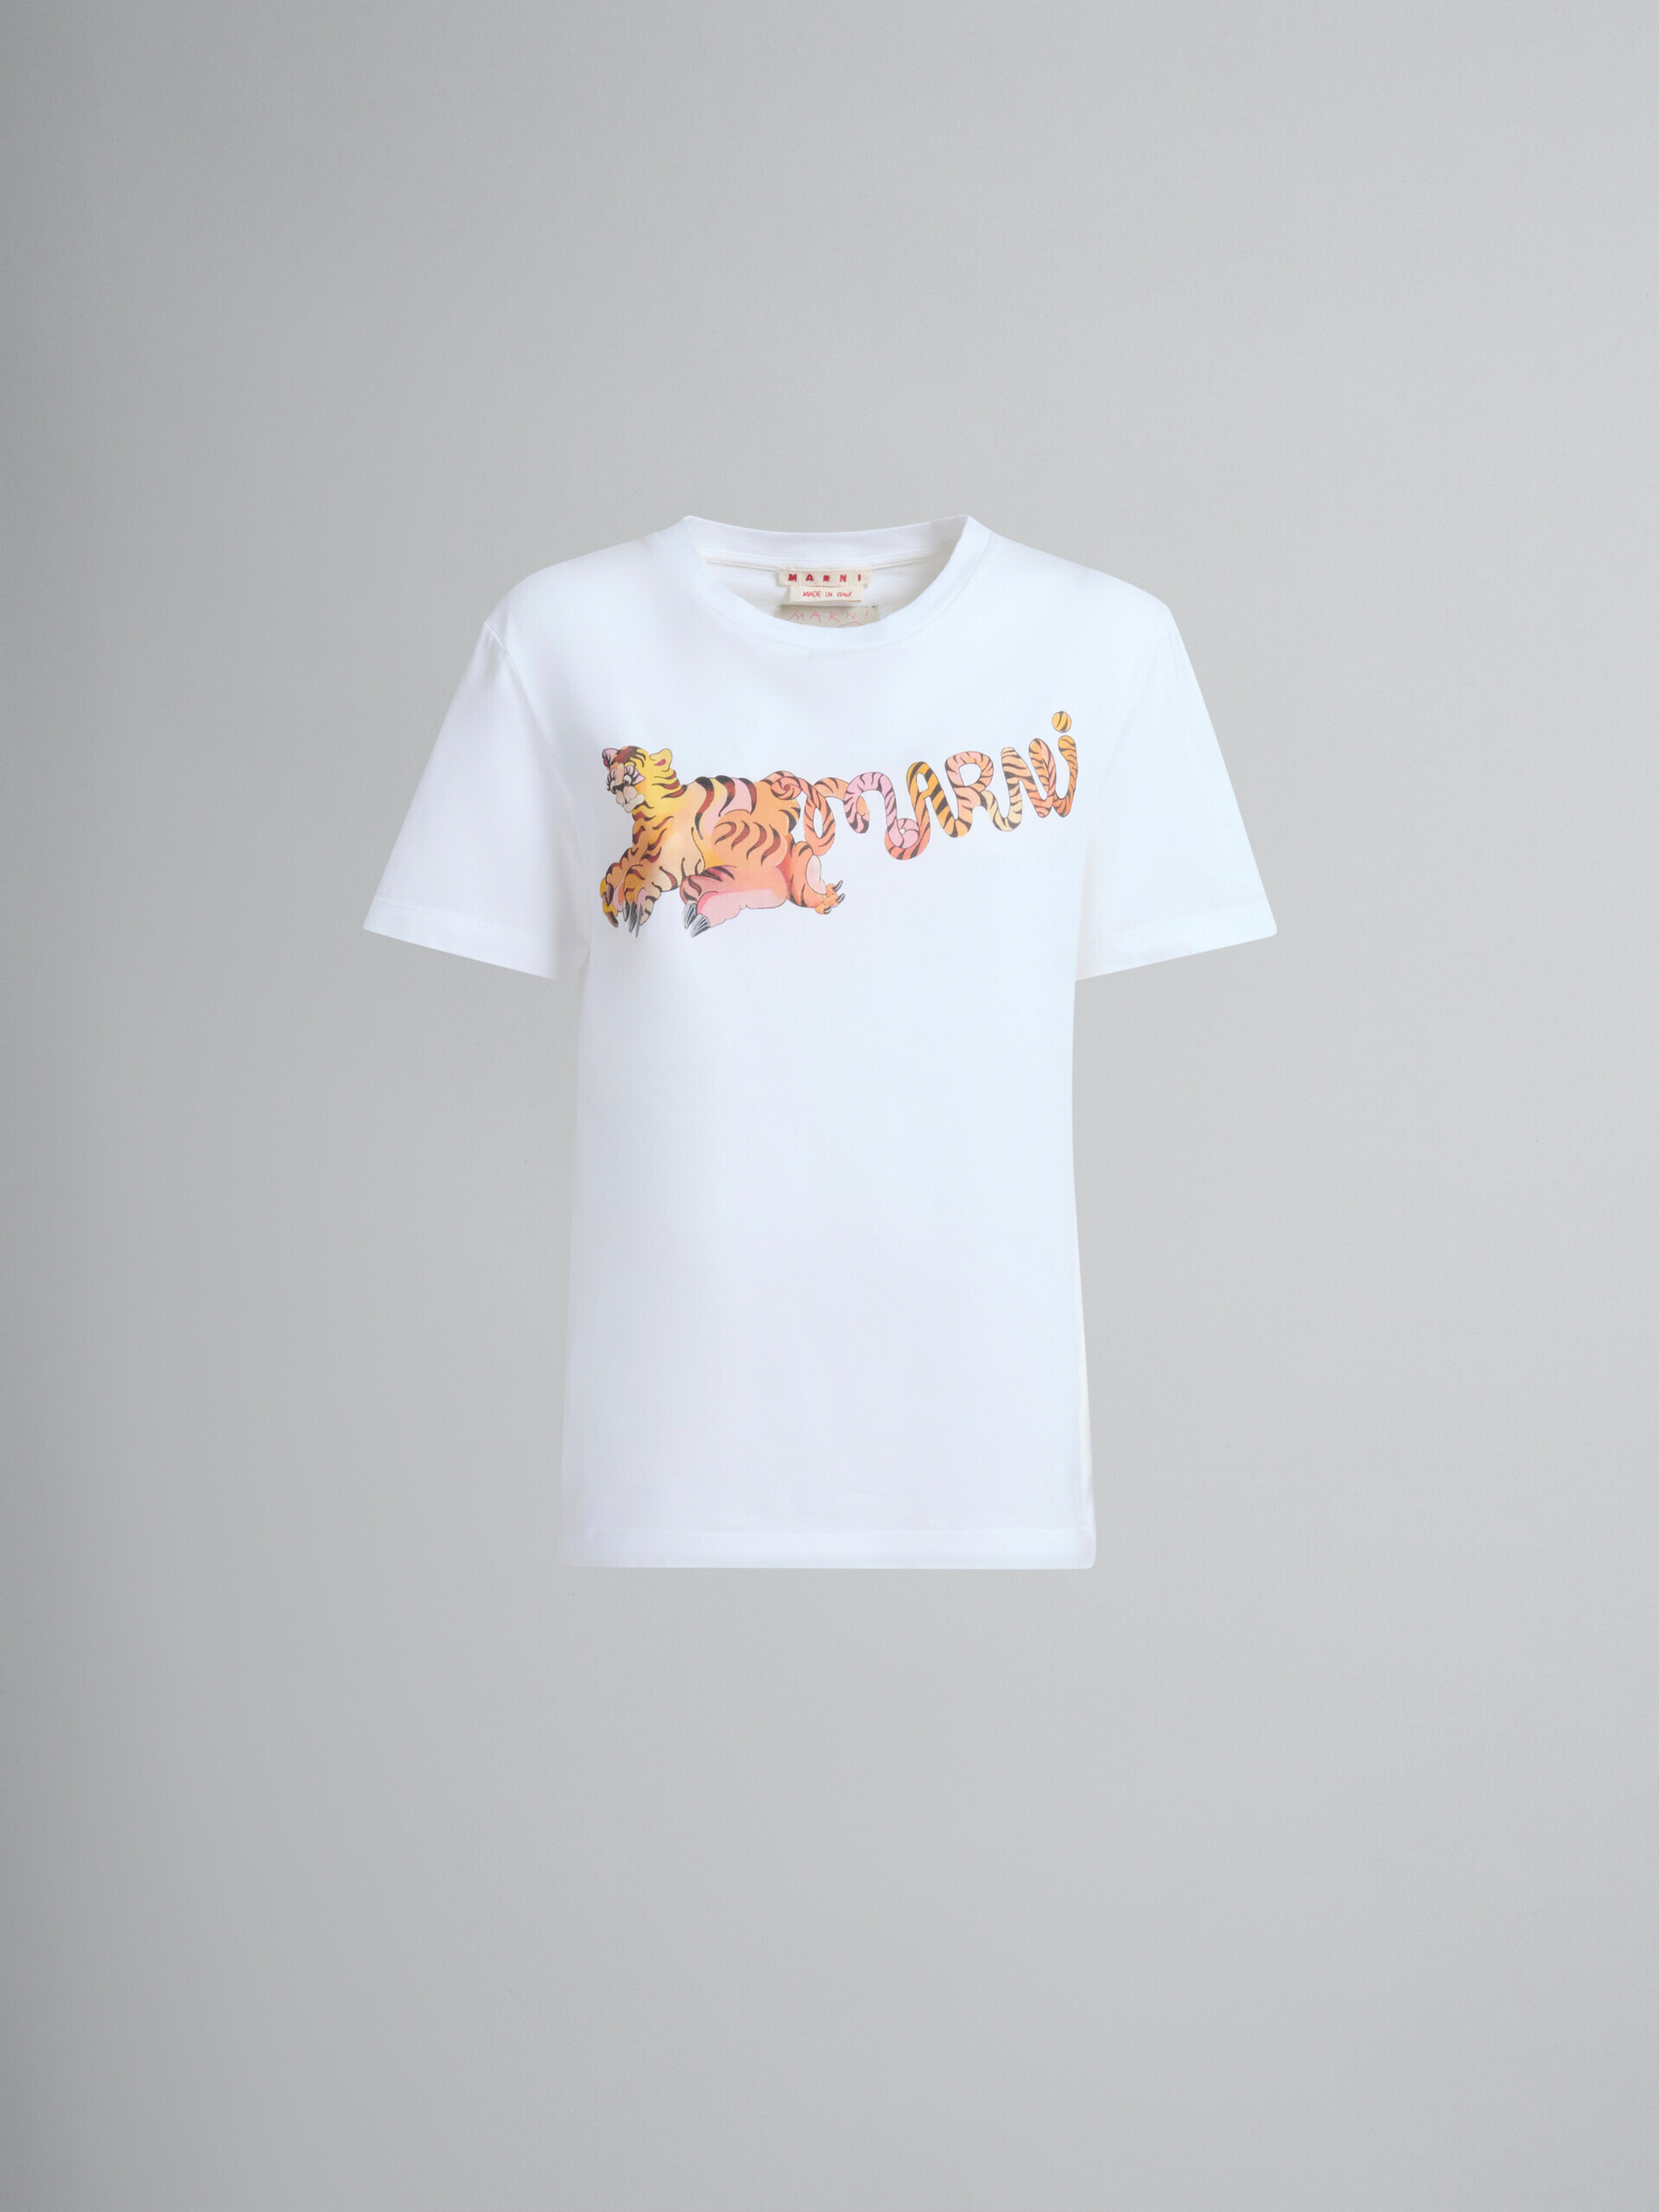 プリント入りホワイトのオーガニックジャージー製レギュラーフィットTシャツ - Tシャツ - Image 2